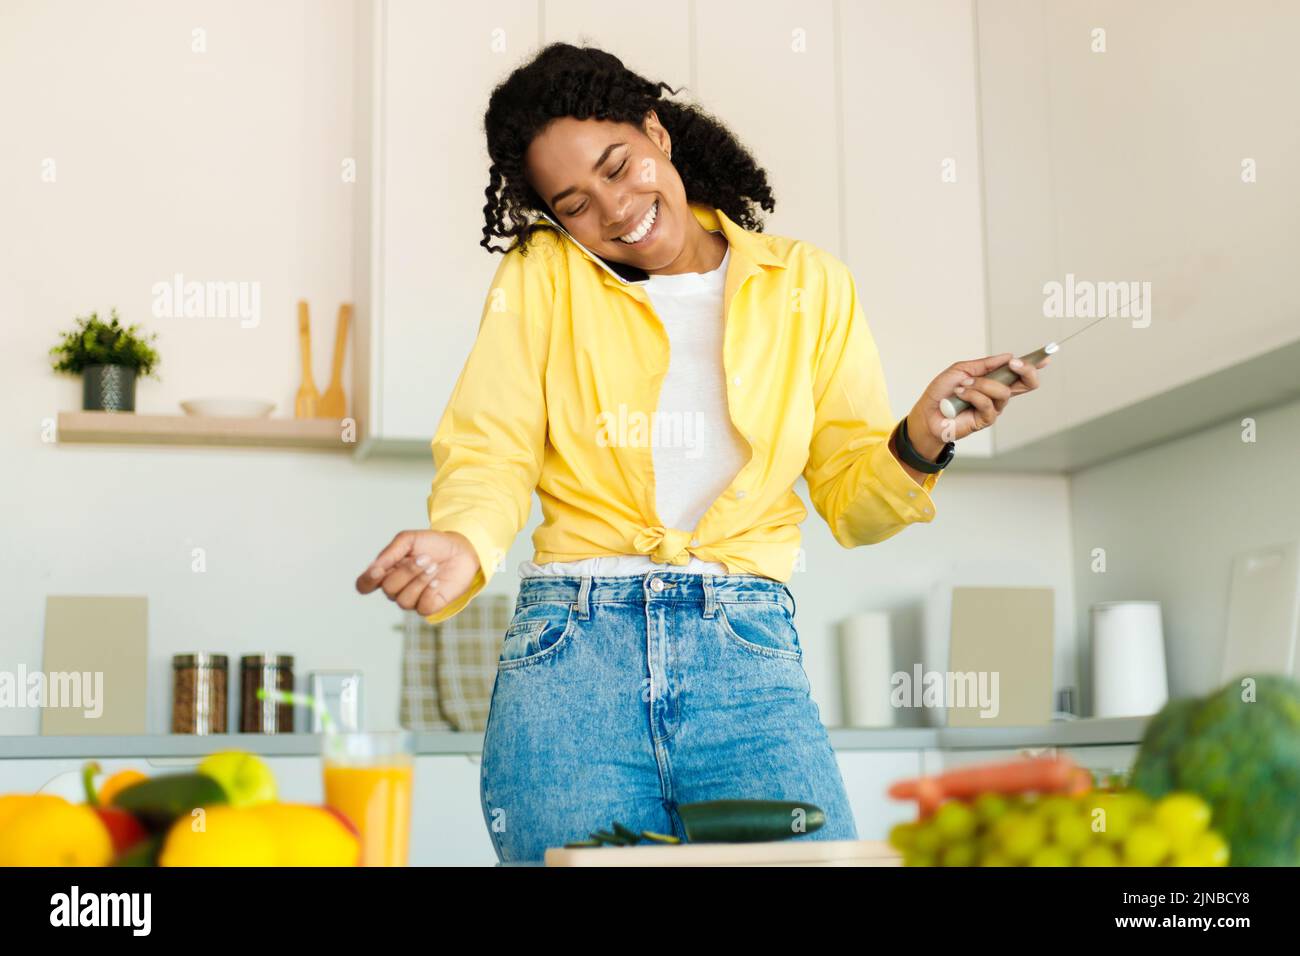 Alegre joven mujer negra hablando en el teléfono celular y sosteniendo el cuchillo en la mano, cortando pepino, preparando ensalada fresca Foto de stock